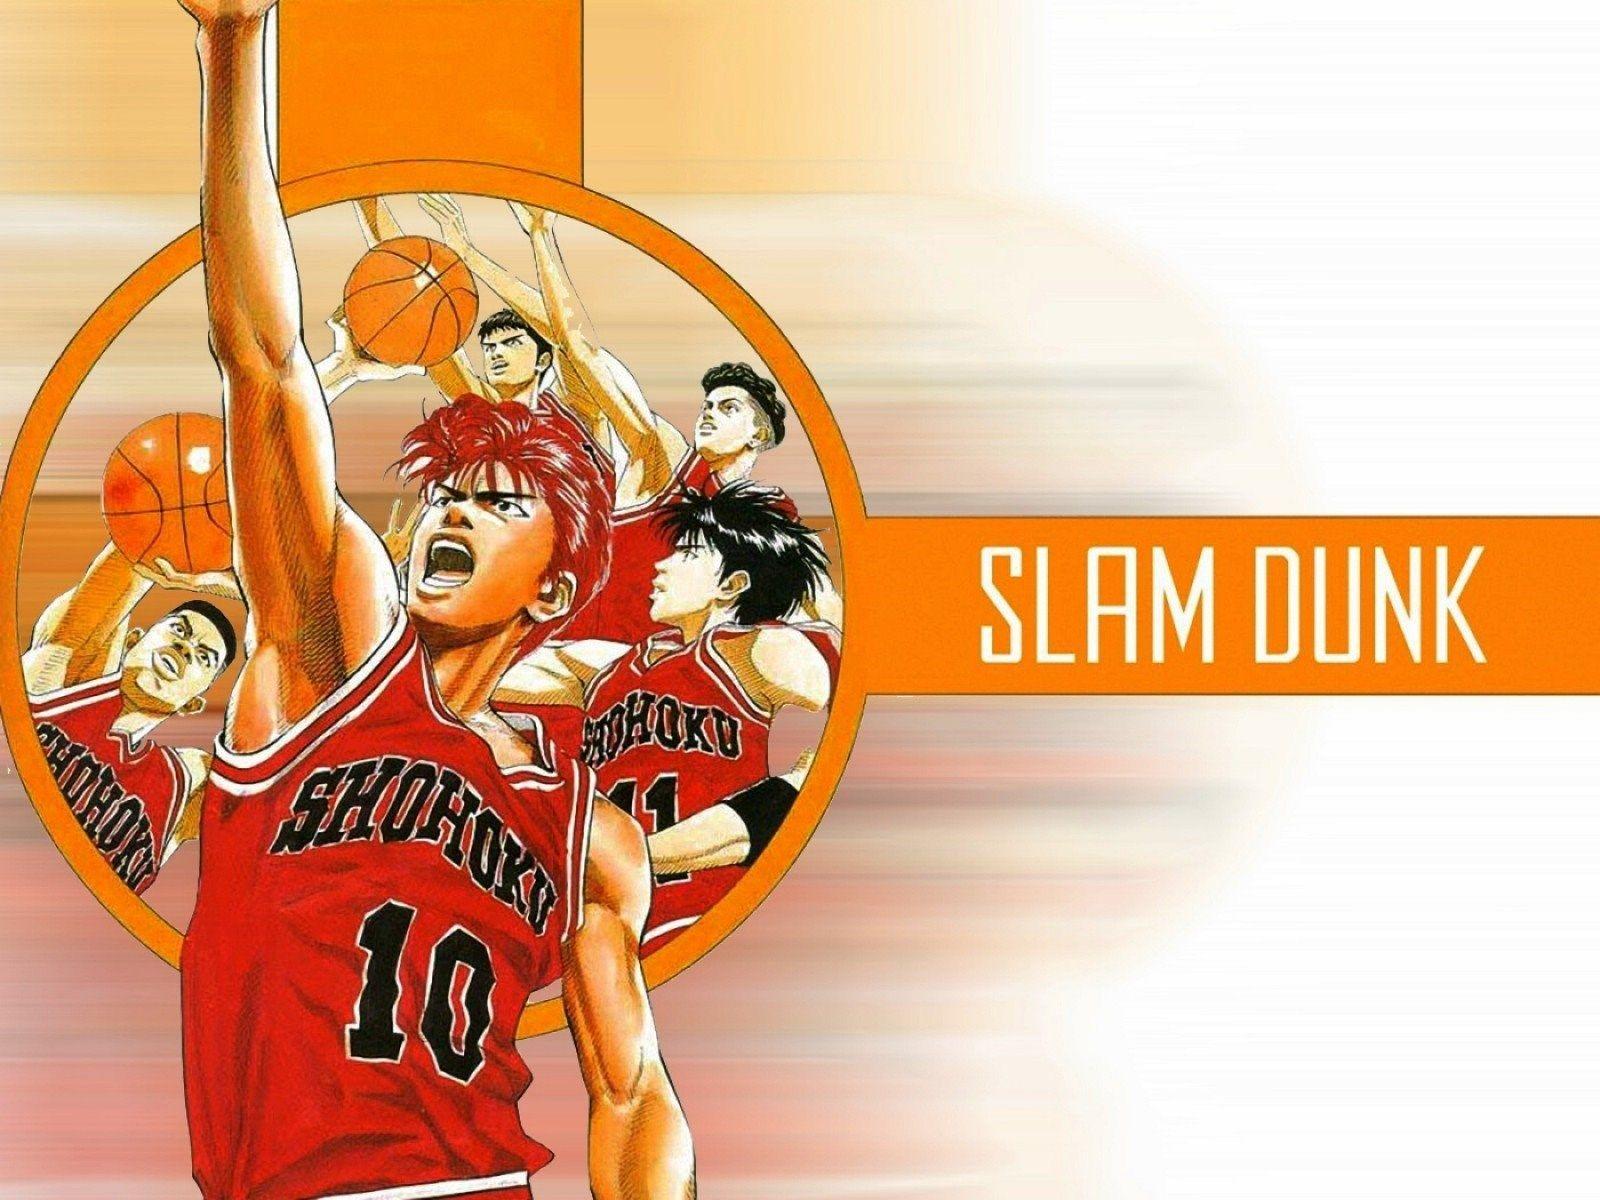 Slam Dunk Hd Wallpapers - Wallpaper Cave